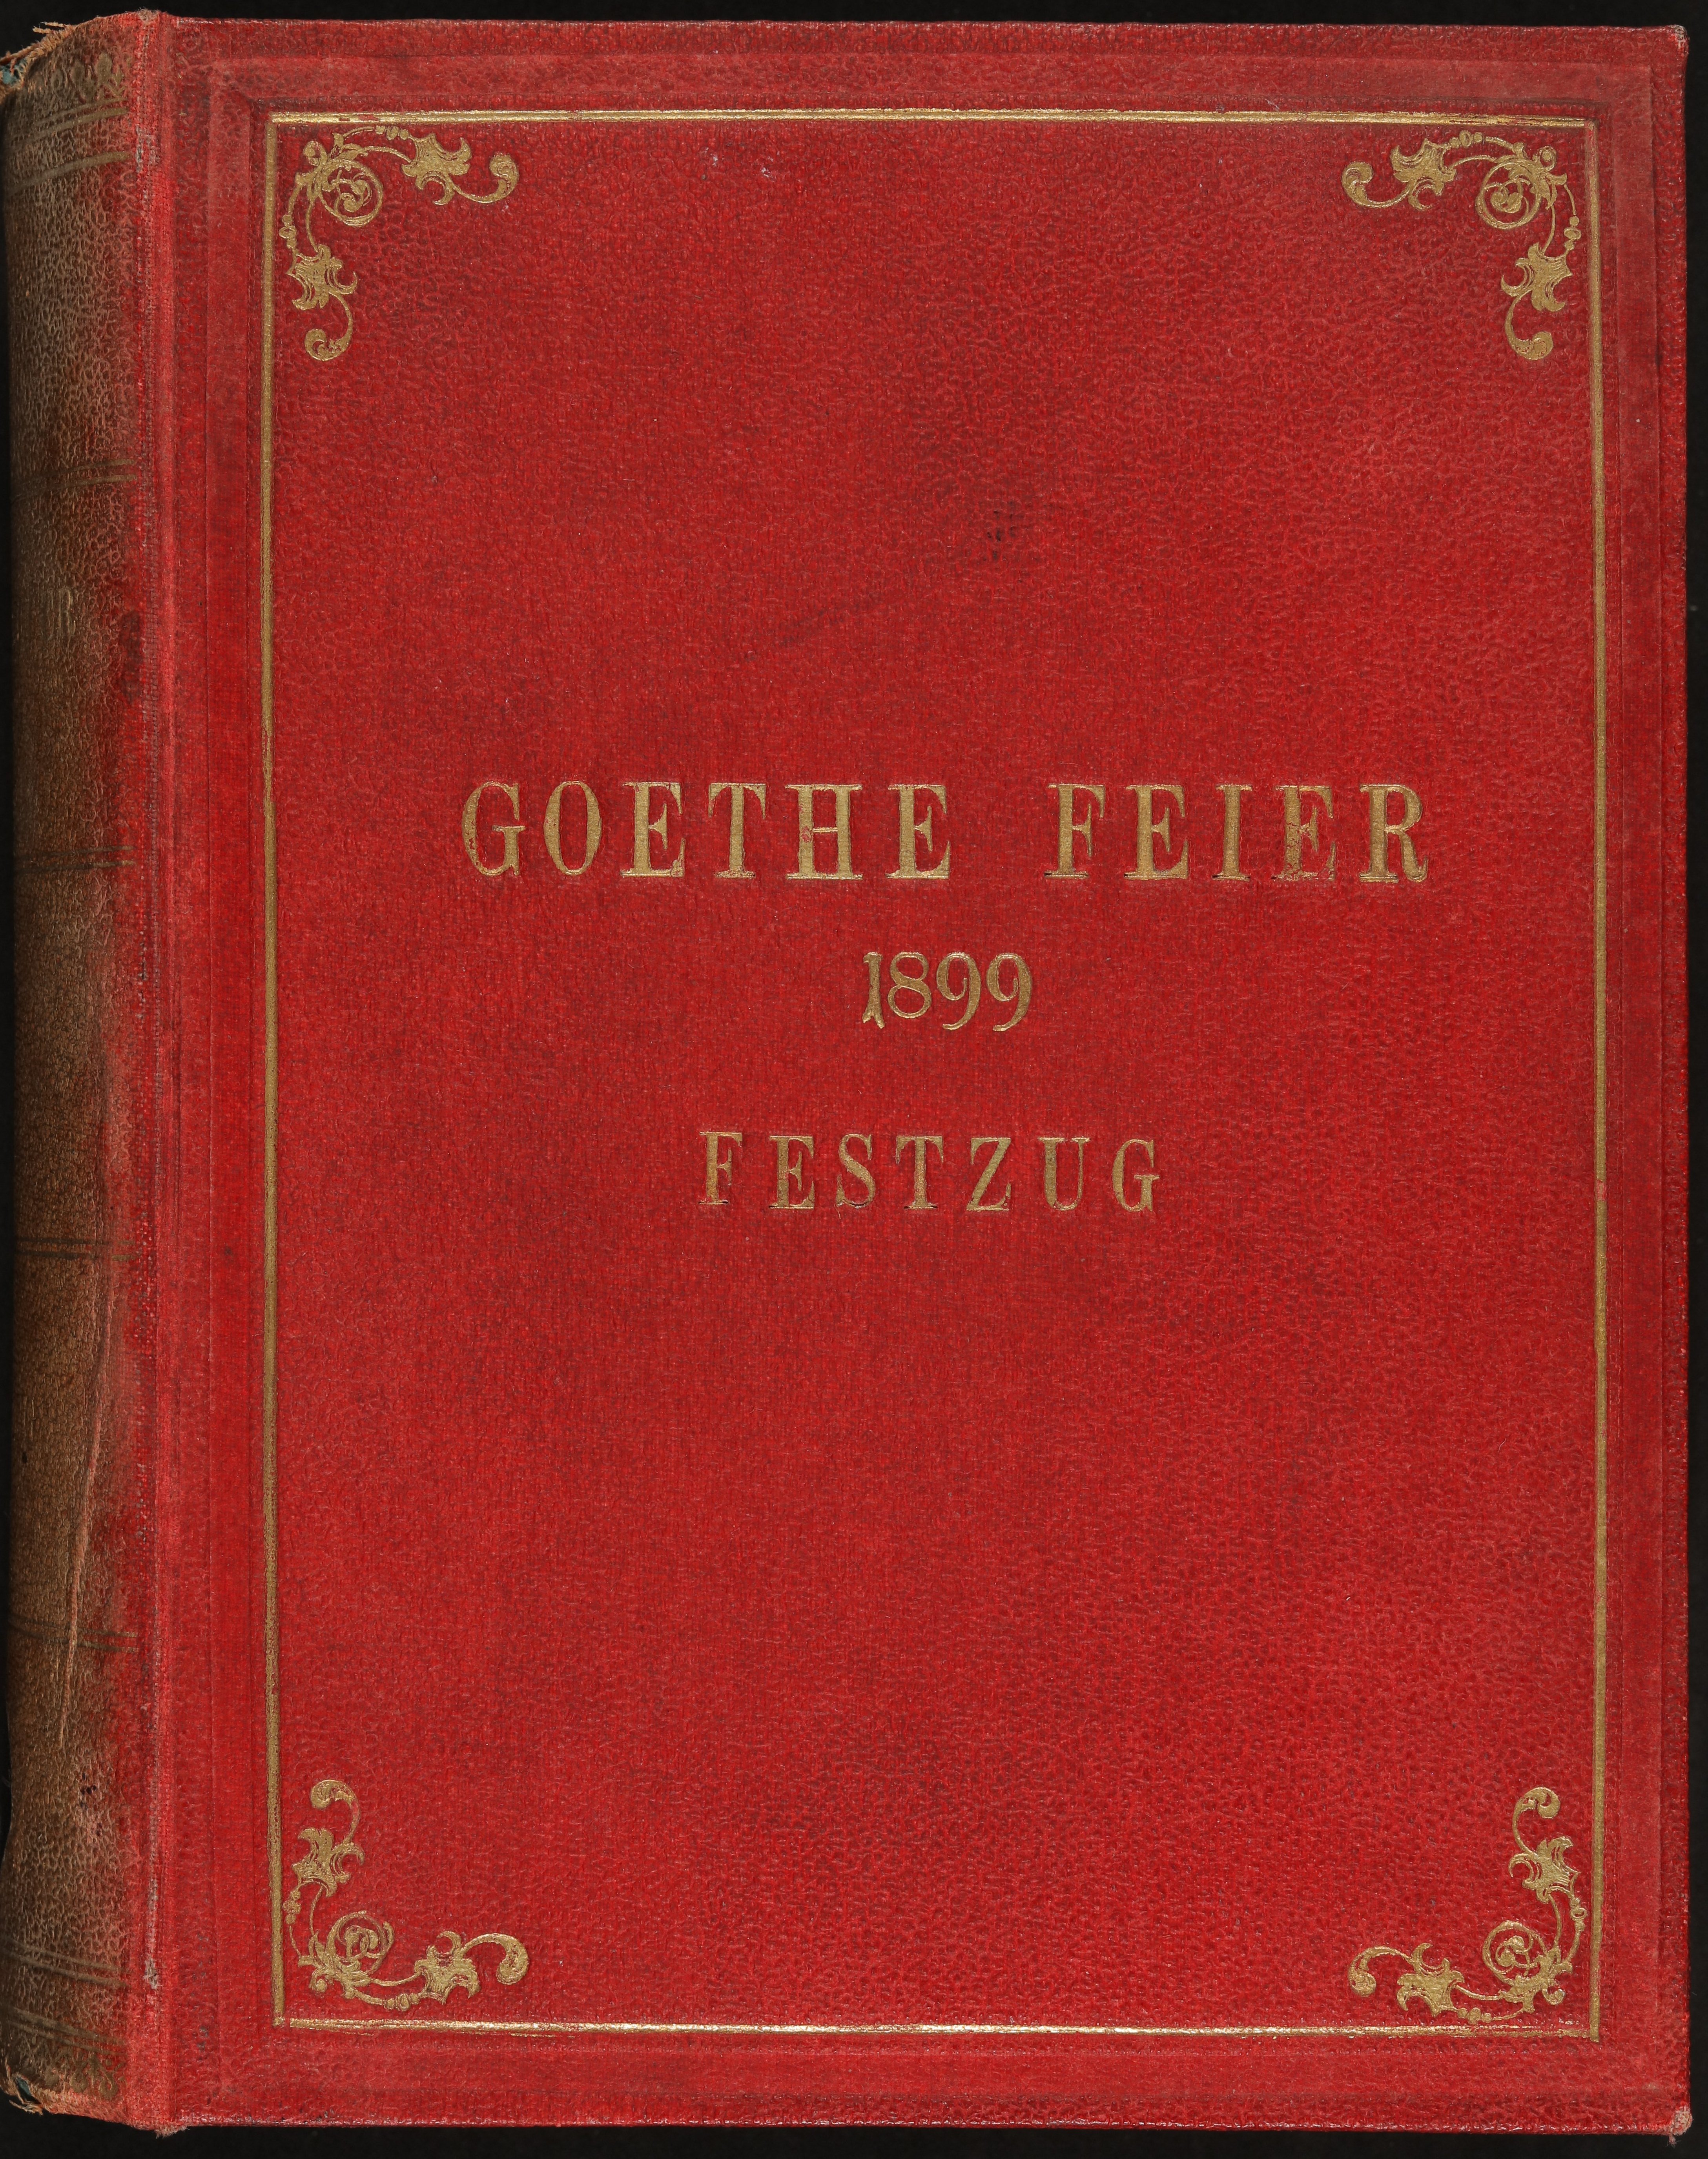 Goethefeier 1899 Festzug (Kassette mit 20 historischen Aufnahmen) (Freies Deutsches Hochstift / Frankfurter Goethe-Museum CC0)